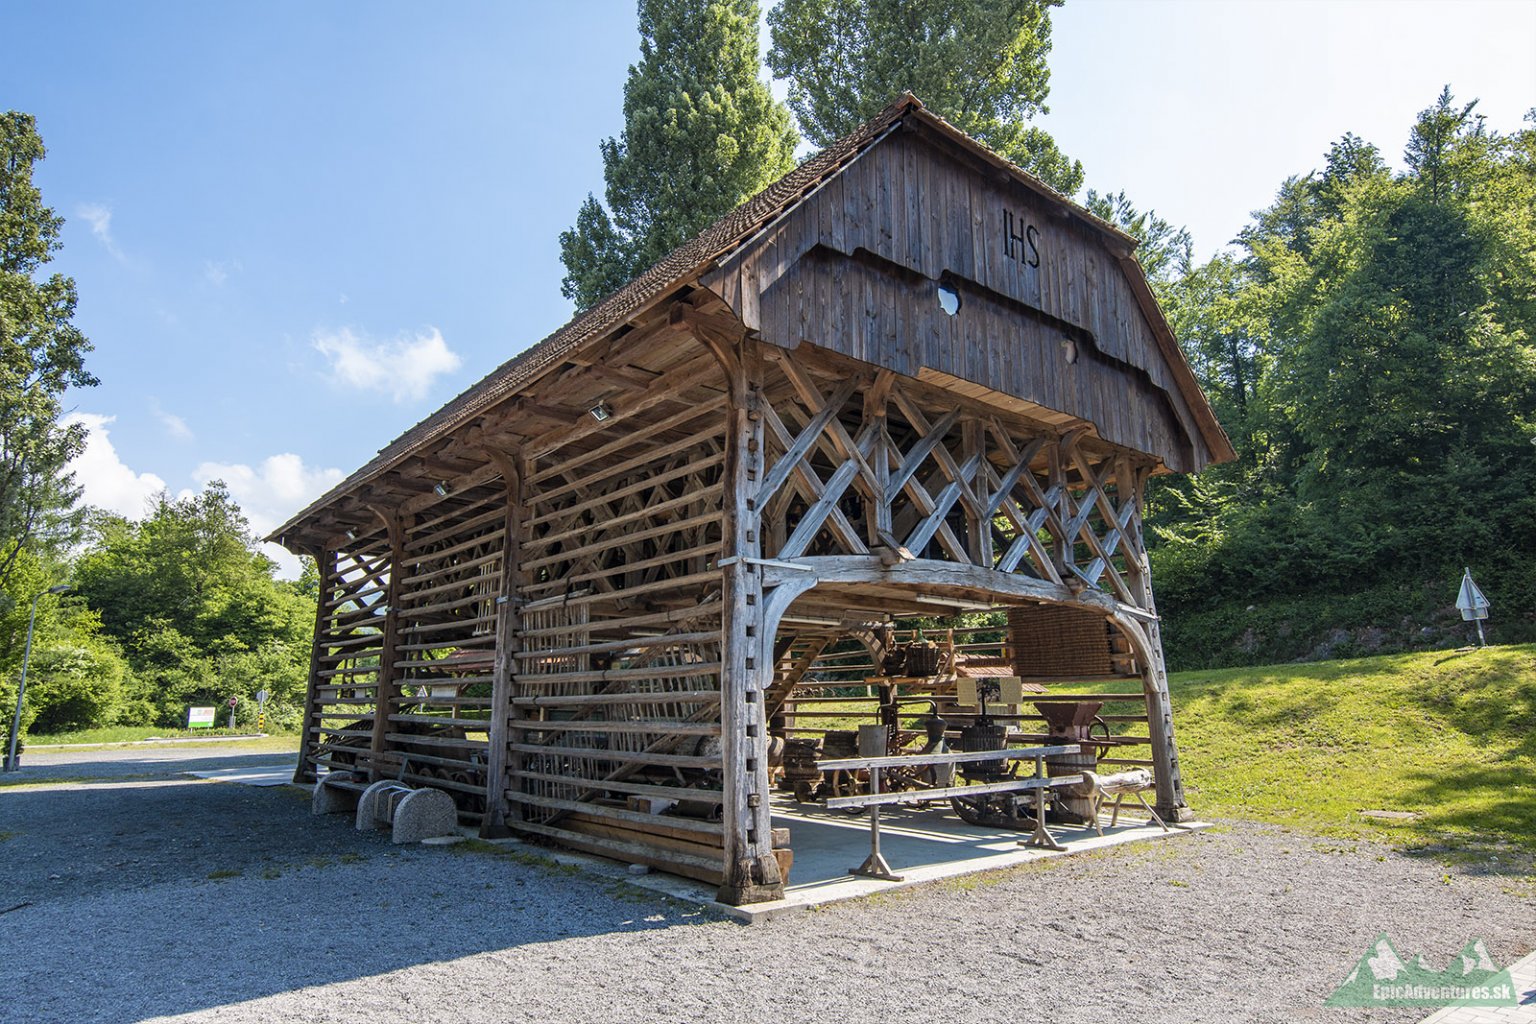 Tradičný kozolec, ktorý je typický pre slovinský vidiek. Slúžil prevažne na sušenie sena, obilia a kukurice;    Foto: epicadventures.sk